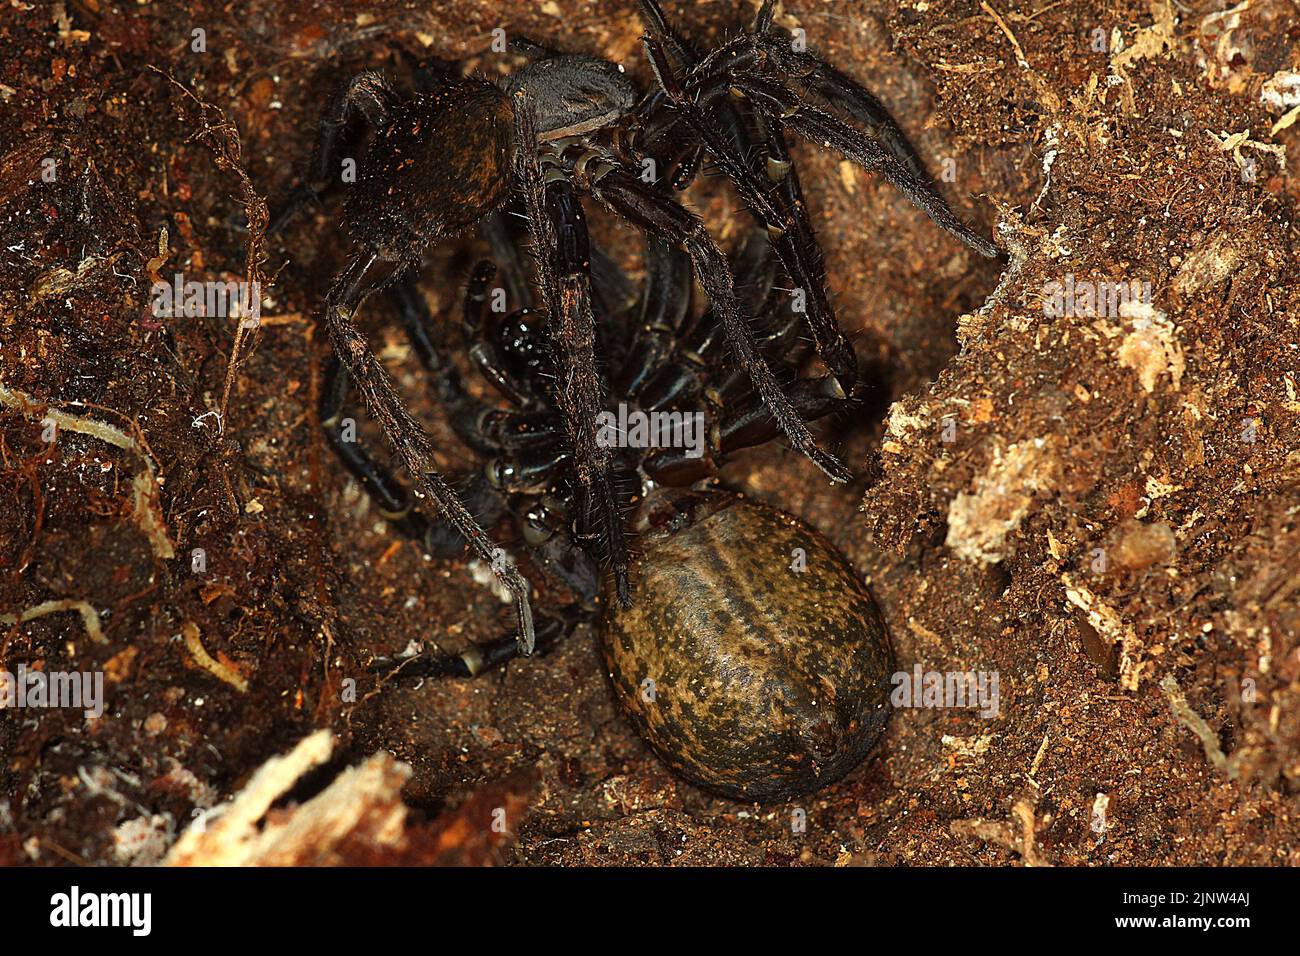 Pair of vagrant spiders (Uliodon albopunctatus) Stock Photo